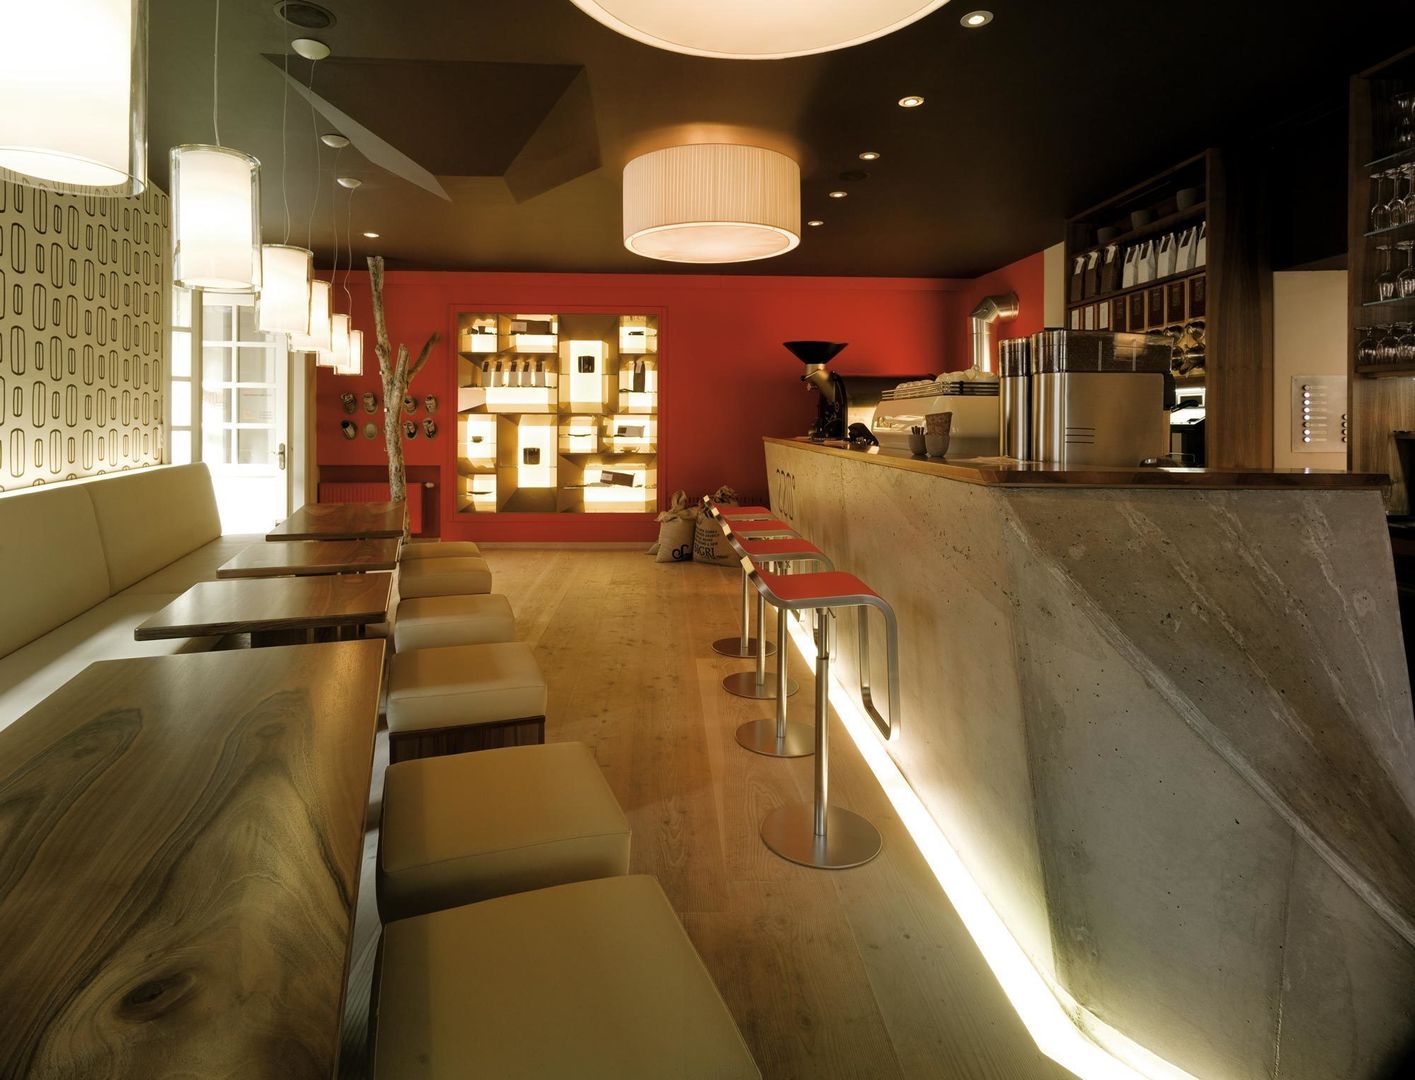 Cafe 220°, Geistlweg-Architektur Geistlweg-Architektur Spazi commerciali Negozi & Locali commerciali